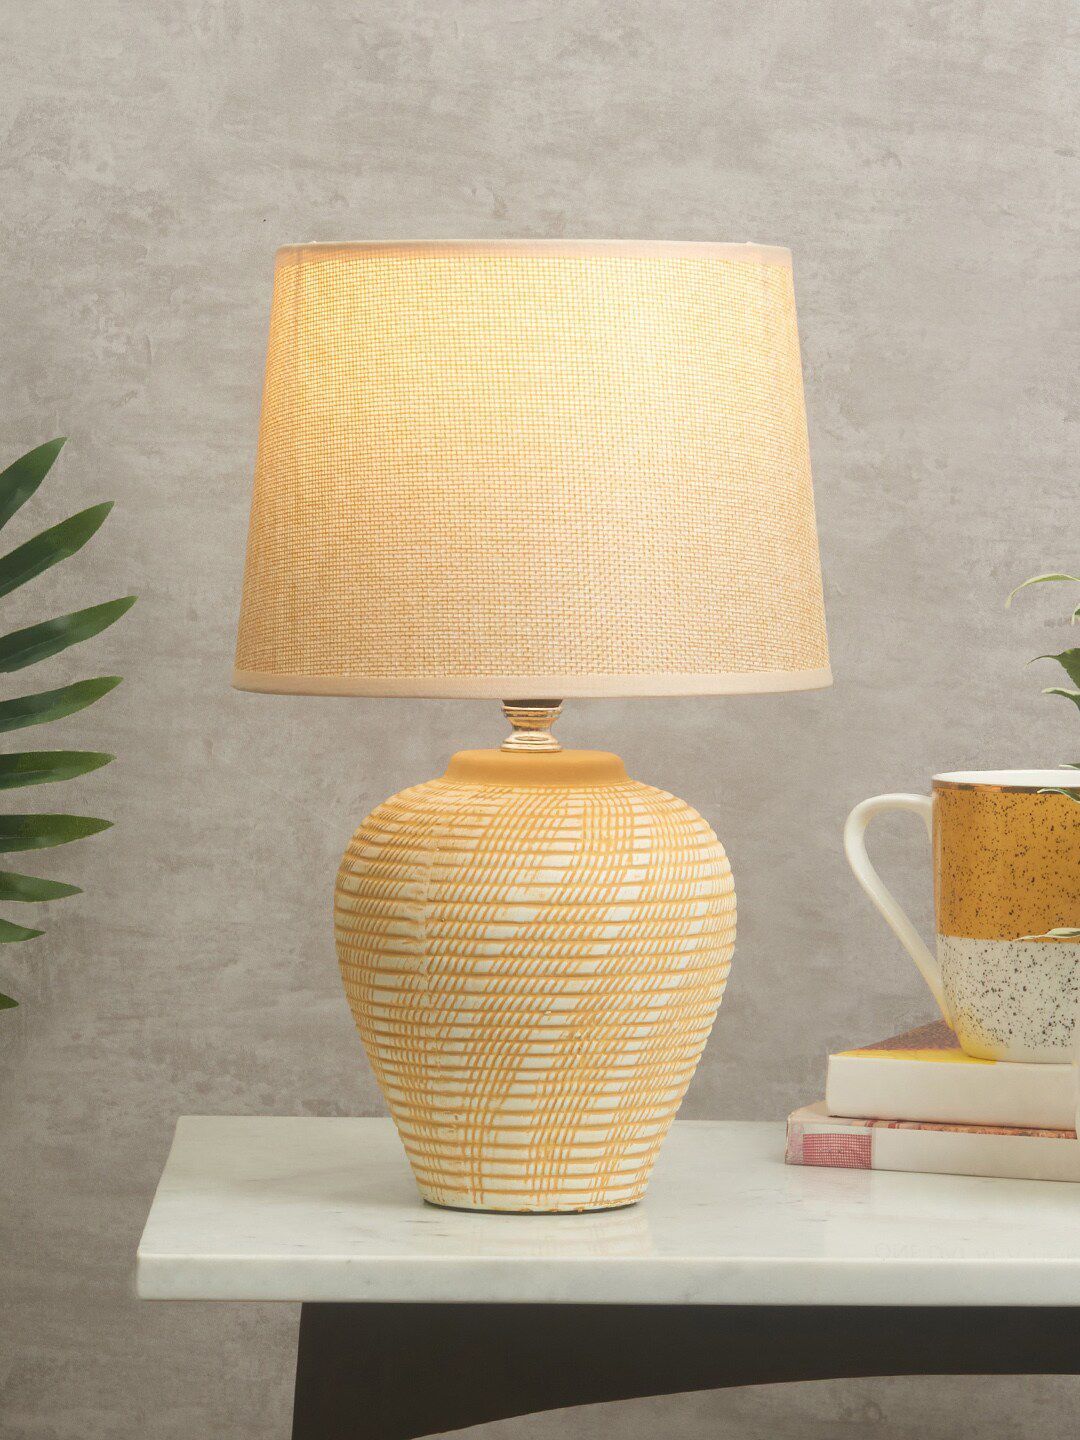 HomeTown Tan-Brown Solid Ceramic Table Lamps Price in India